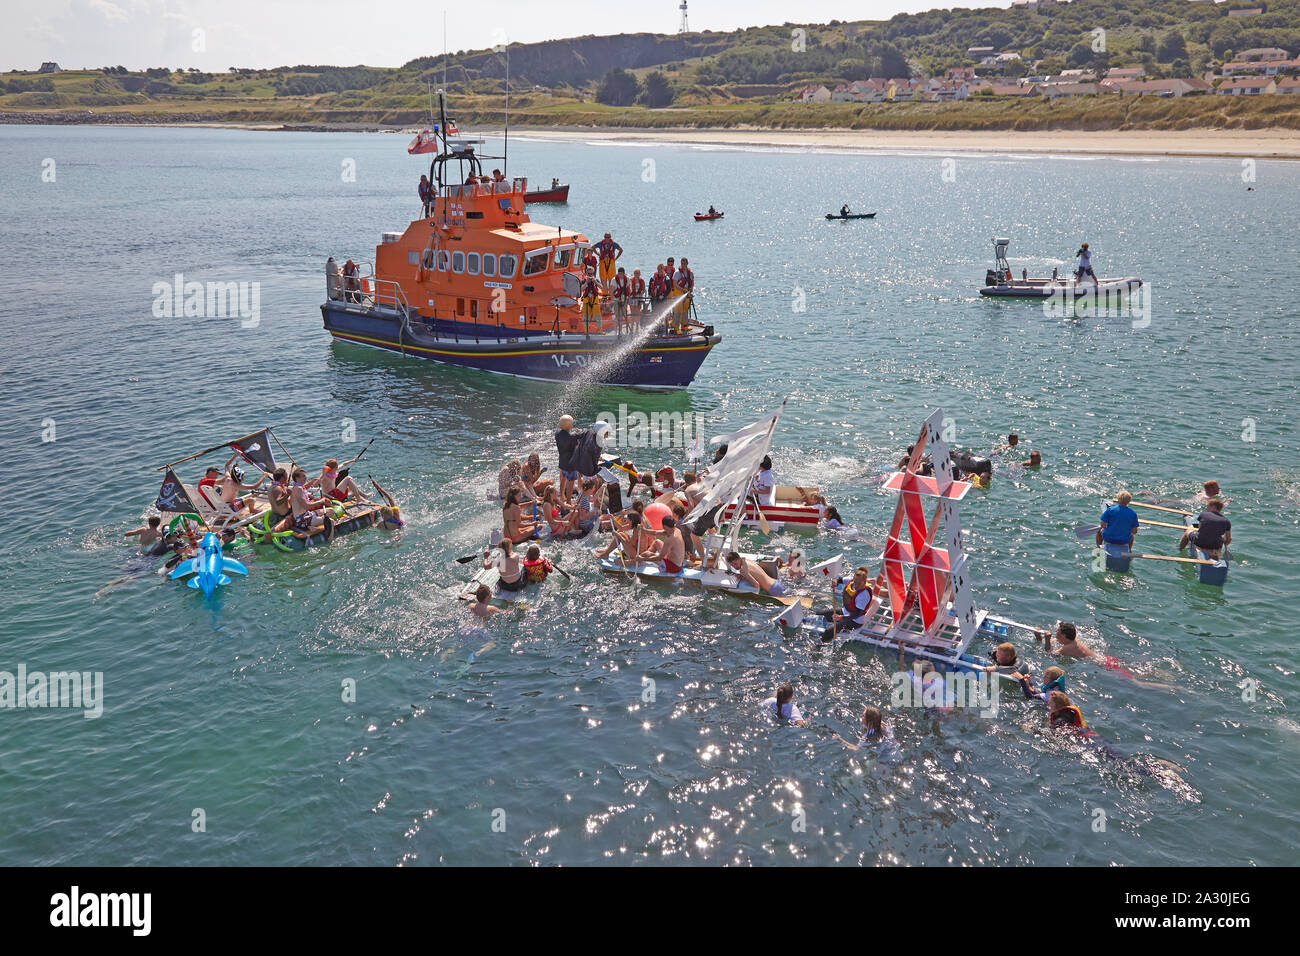 Lifeboatman lavaggio acqua a Daft zattera gara i partecipanti durante il festival annuale chiamato Alderney settimana a Alderney sulle Isole del Canale, GB Foto Stock